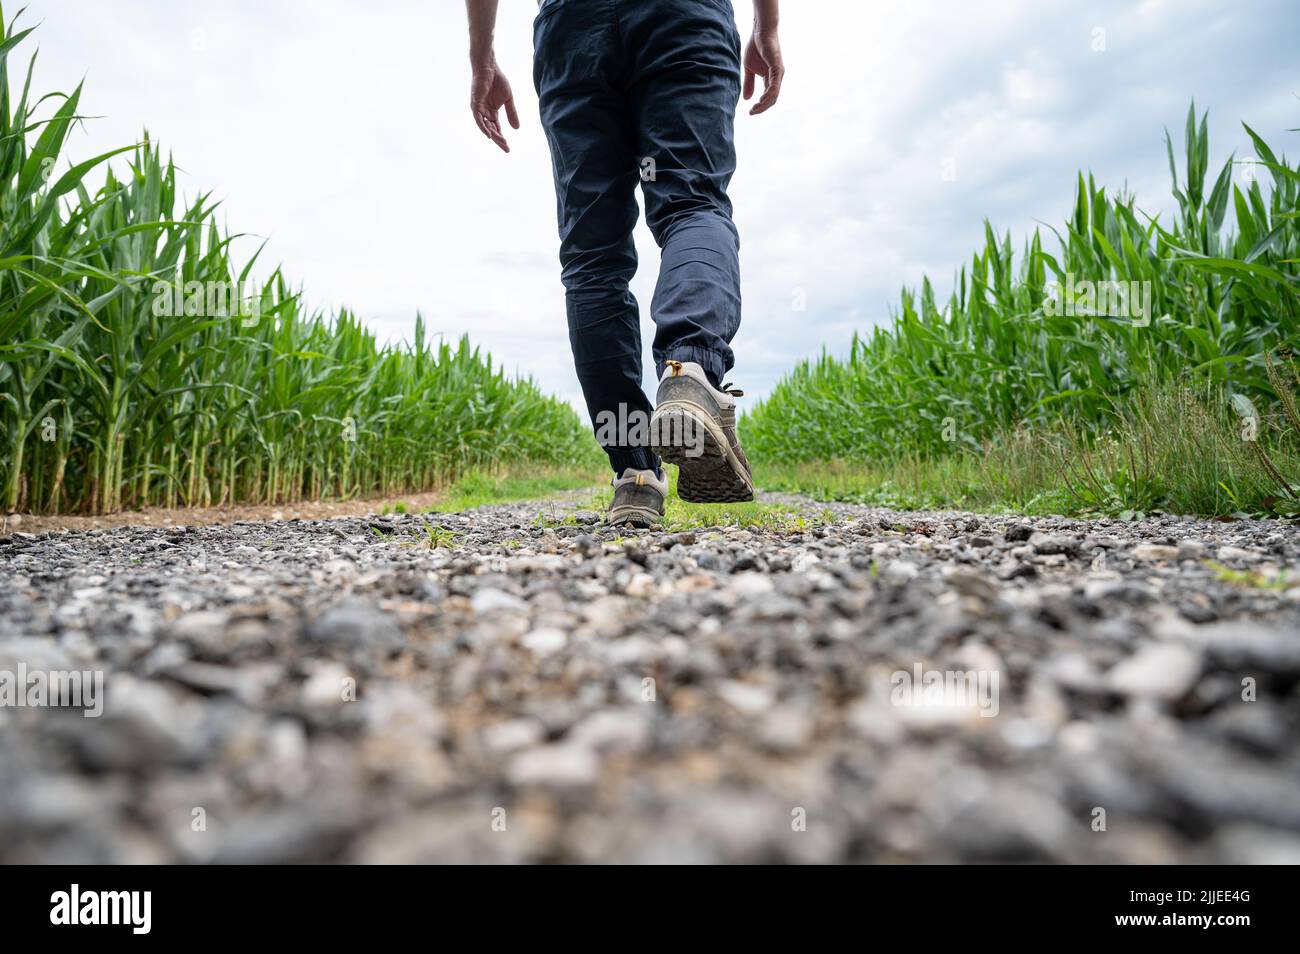 Vista desde detrás de un hombre con zapatos de senderismo caminando por una carretera rural que corre entre campos de maíz verdes. Foto de stock